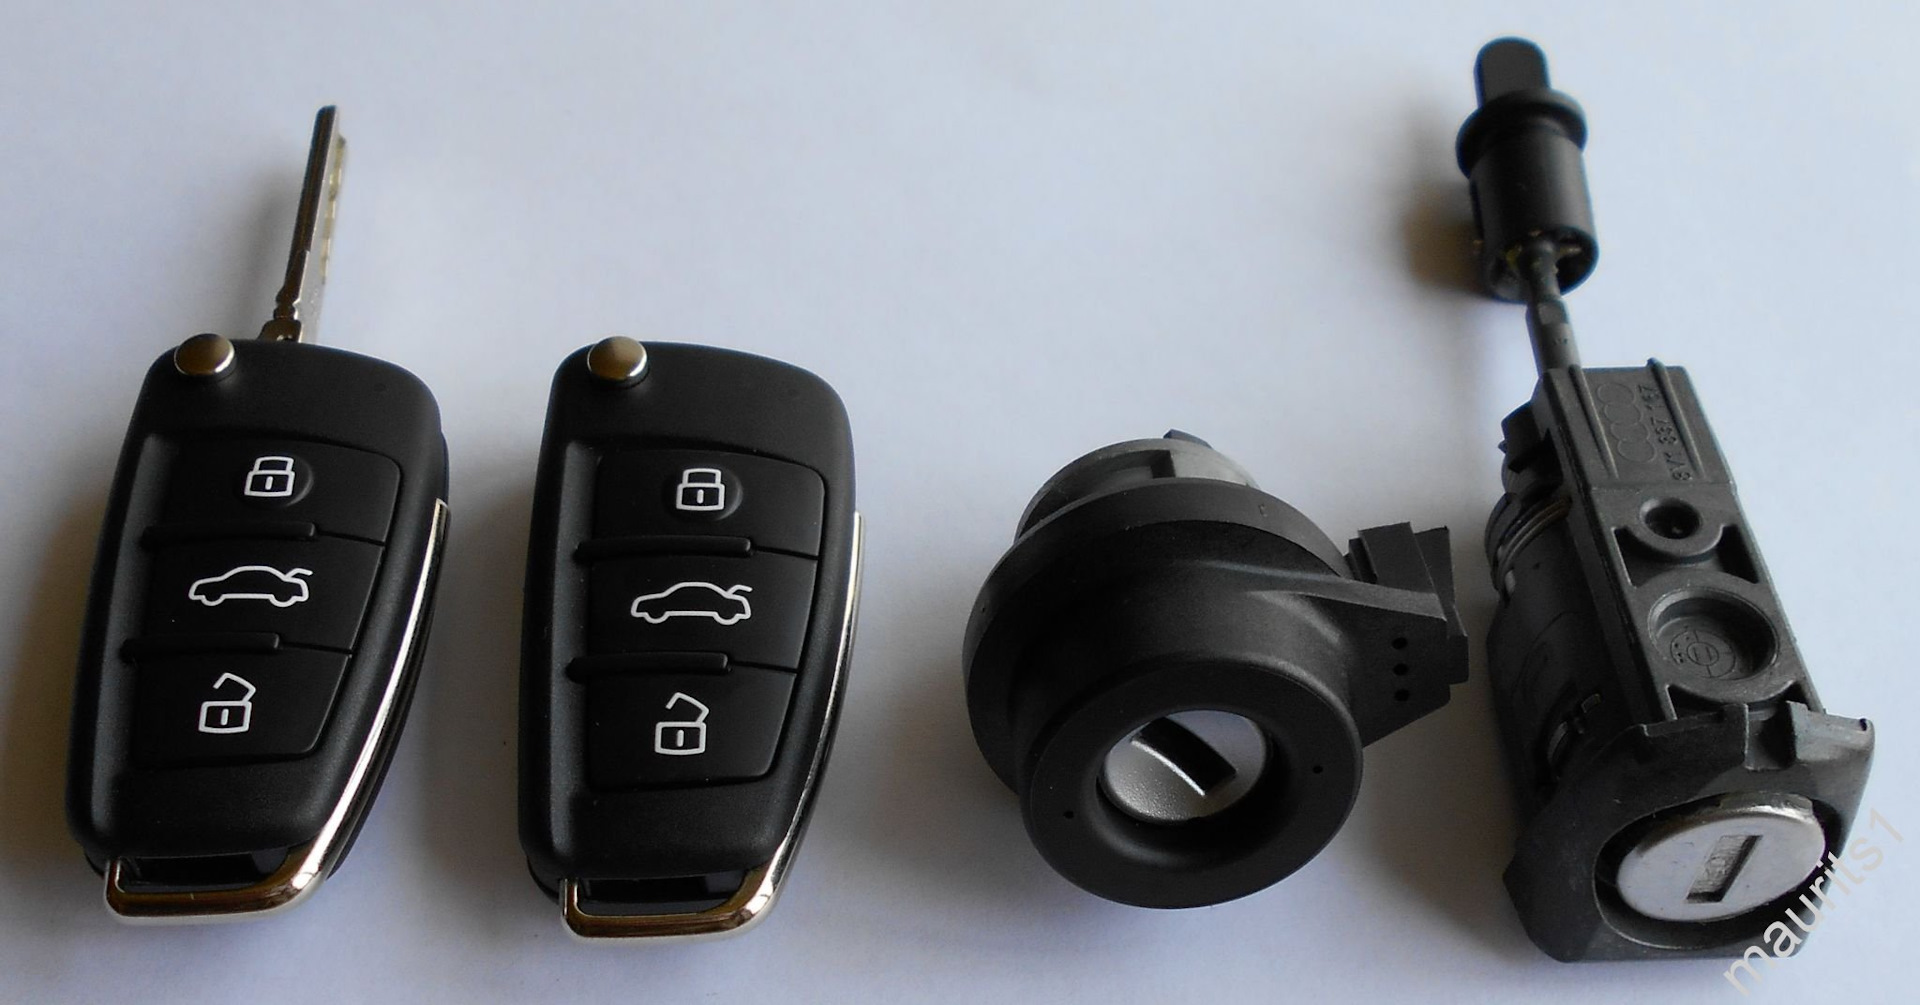 Ts keys. Ауди а6 с6 2006 ключ. 2 Комплекта ключей Audi. 6rg998139. 2041a6.